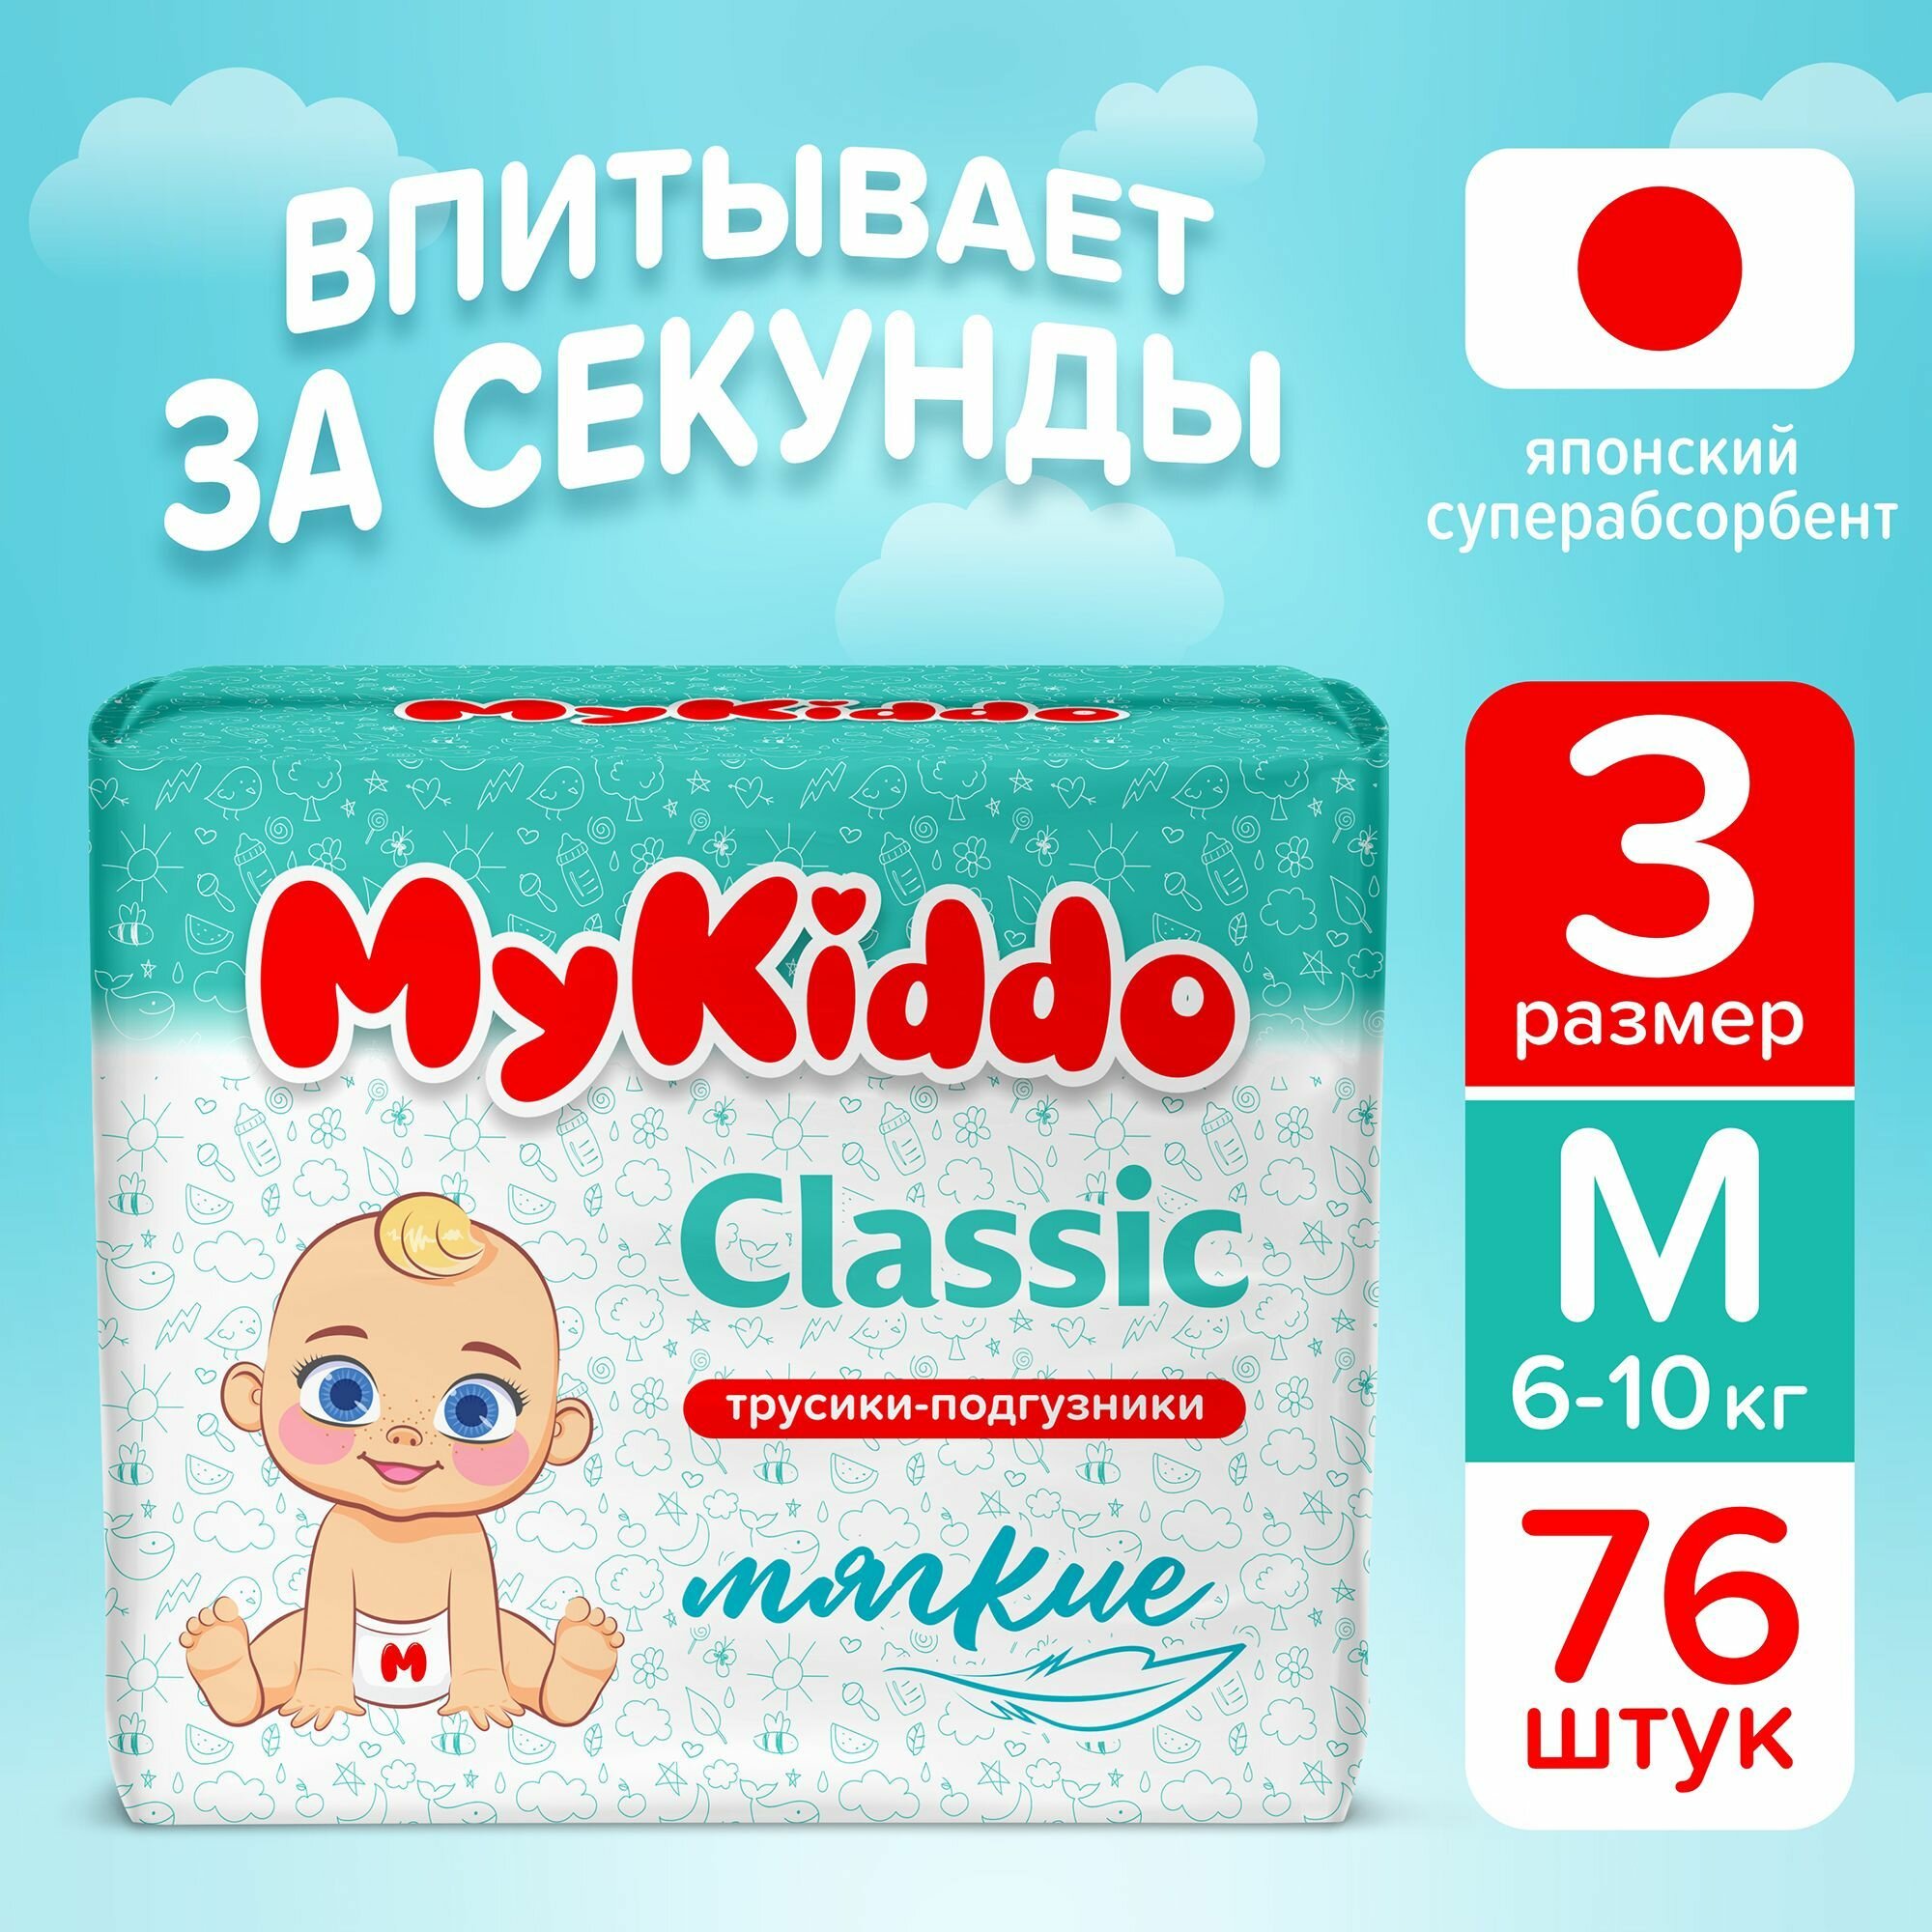 Подгузники трусики детские MyKiddo Classic размер 3 M, для детей весом 6-10 кг, 76 шт. (2 упаковки по 38 шт.) мегабокс